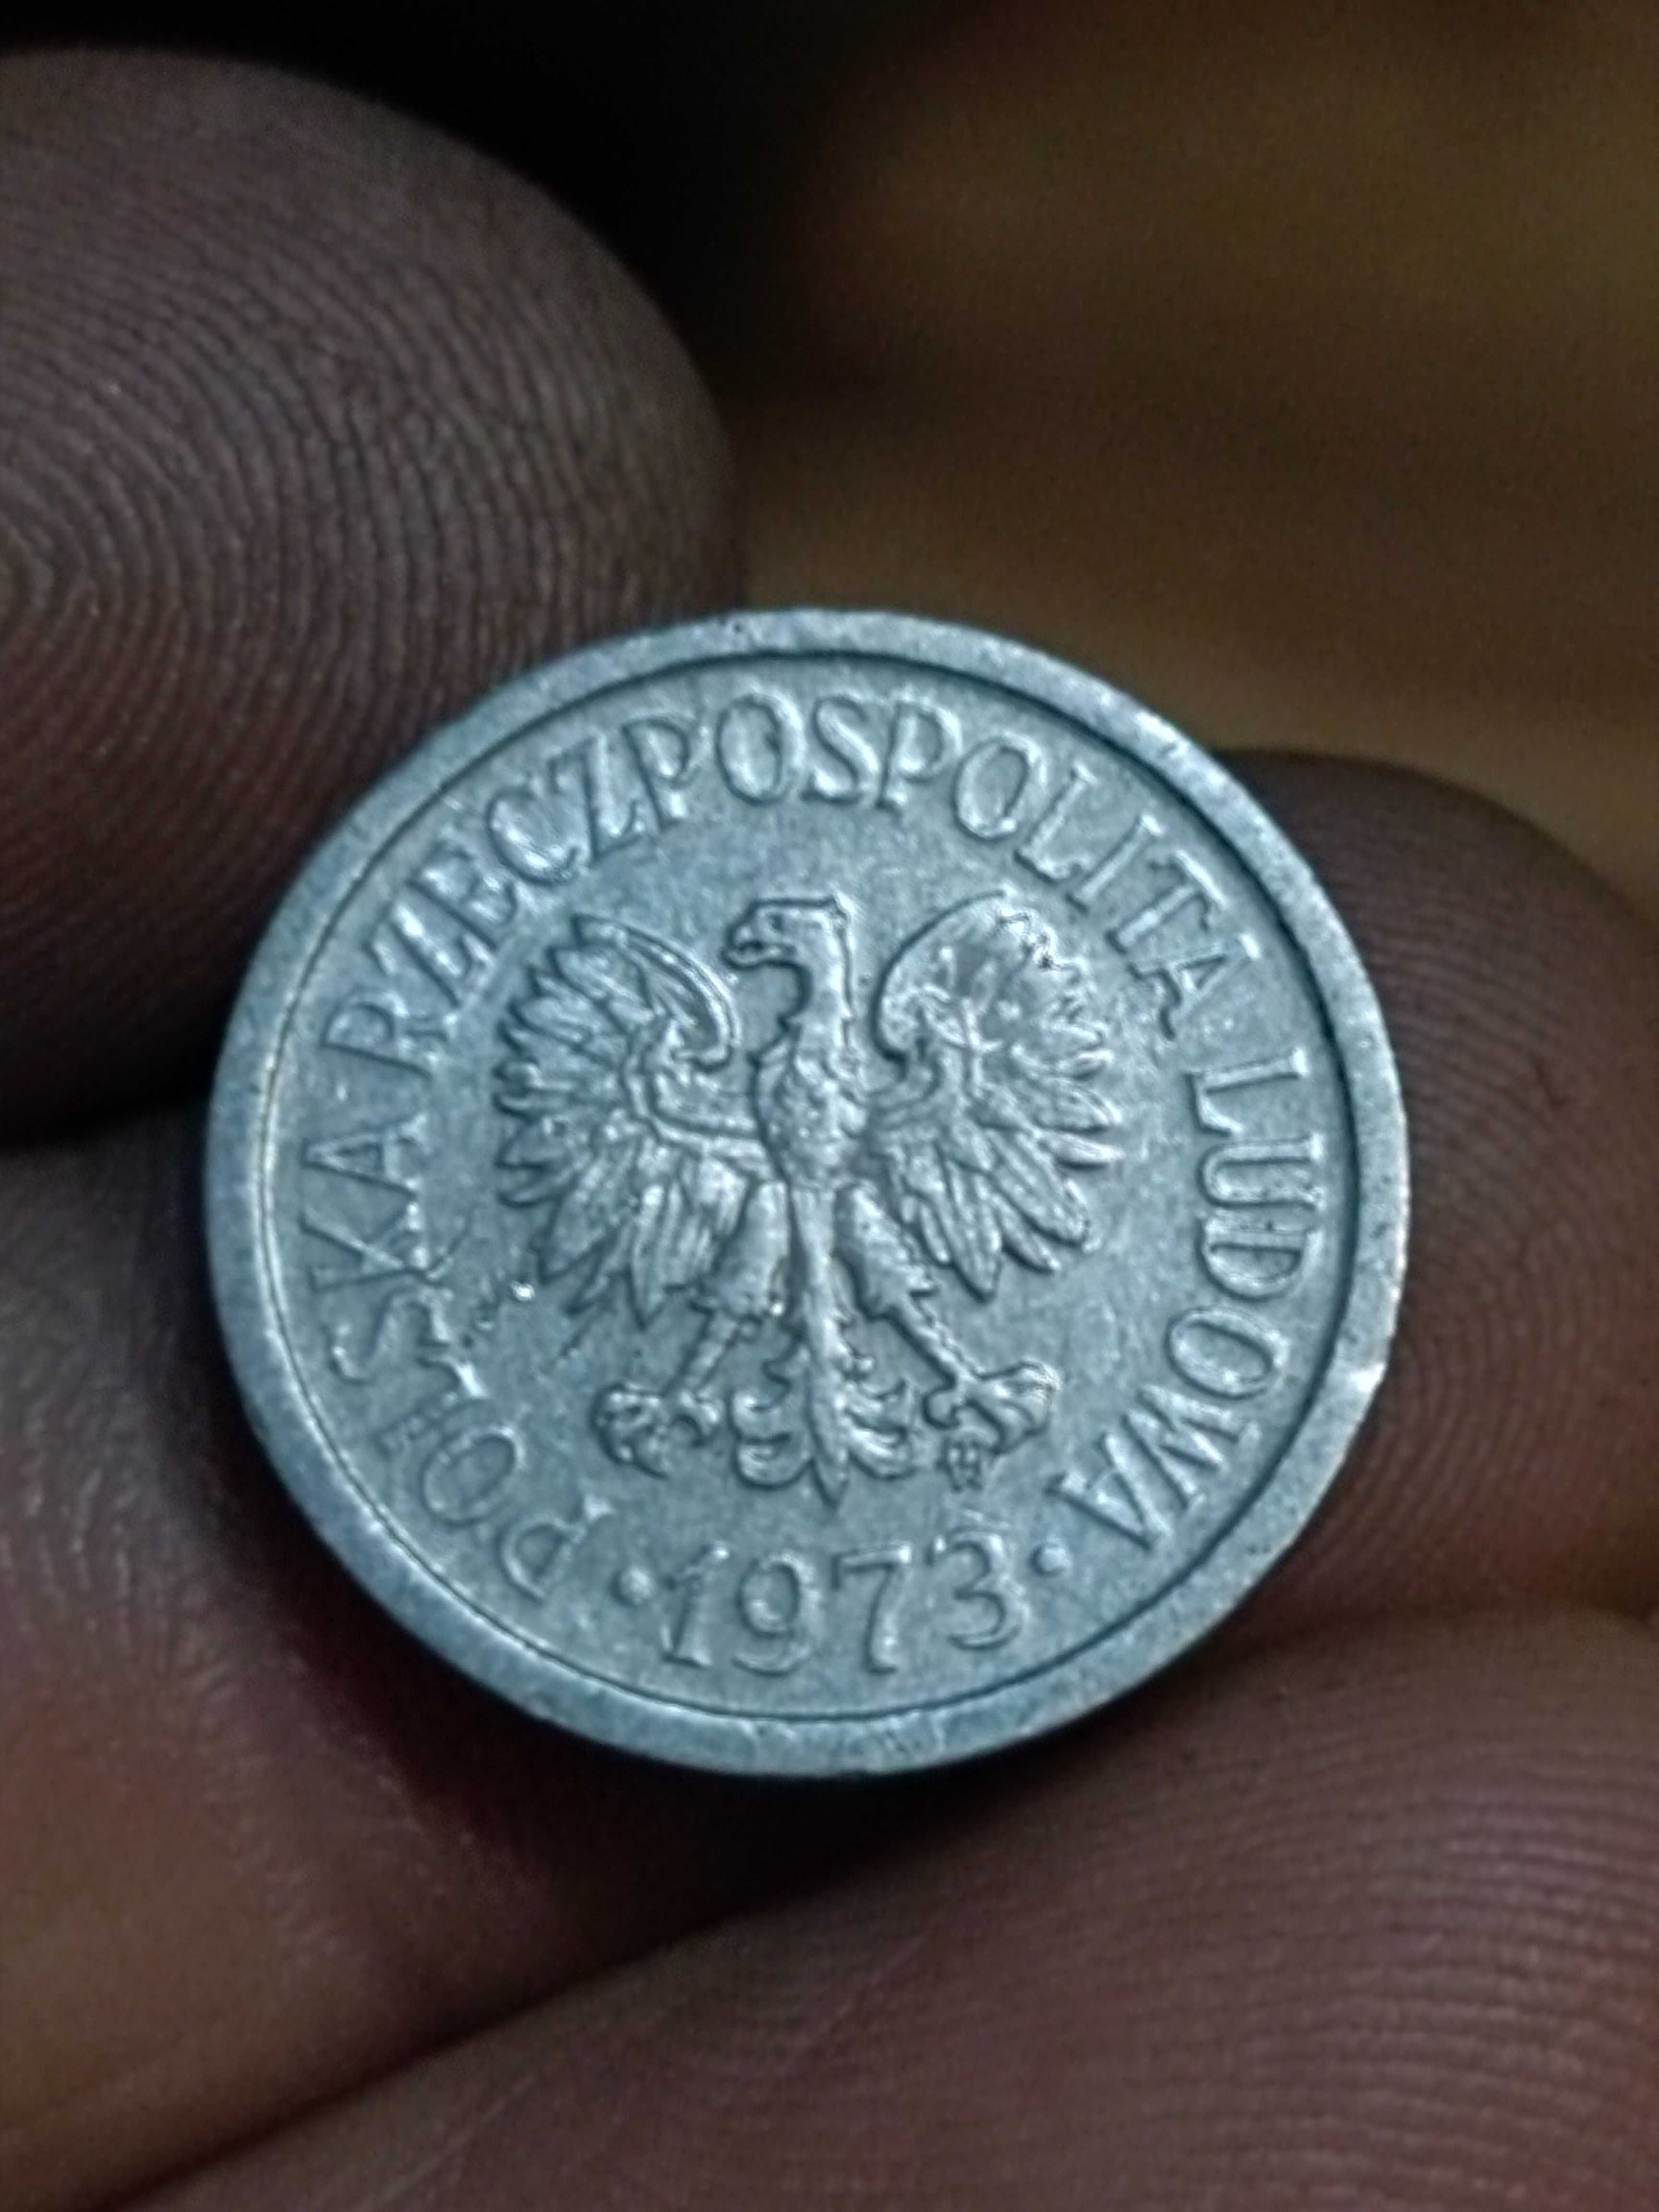 Sprzedam monete 10 groszy 1973 ze znakiem mennicy